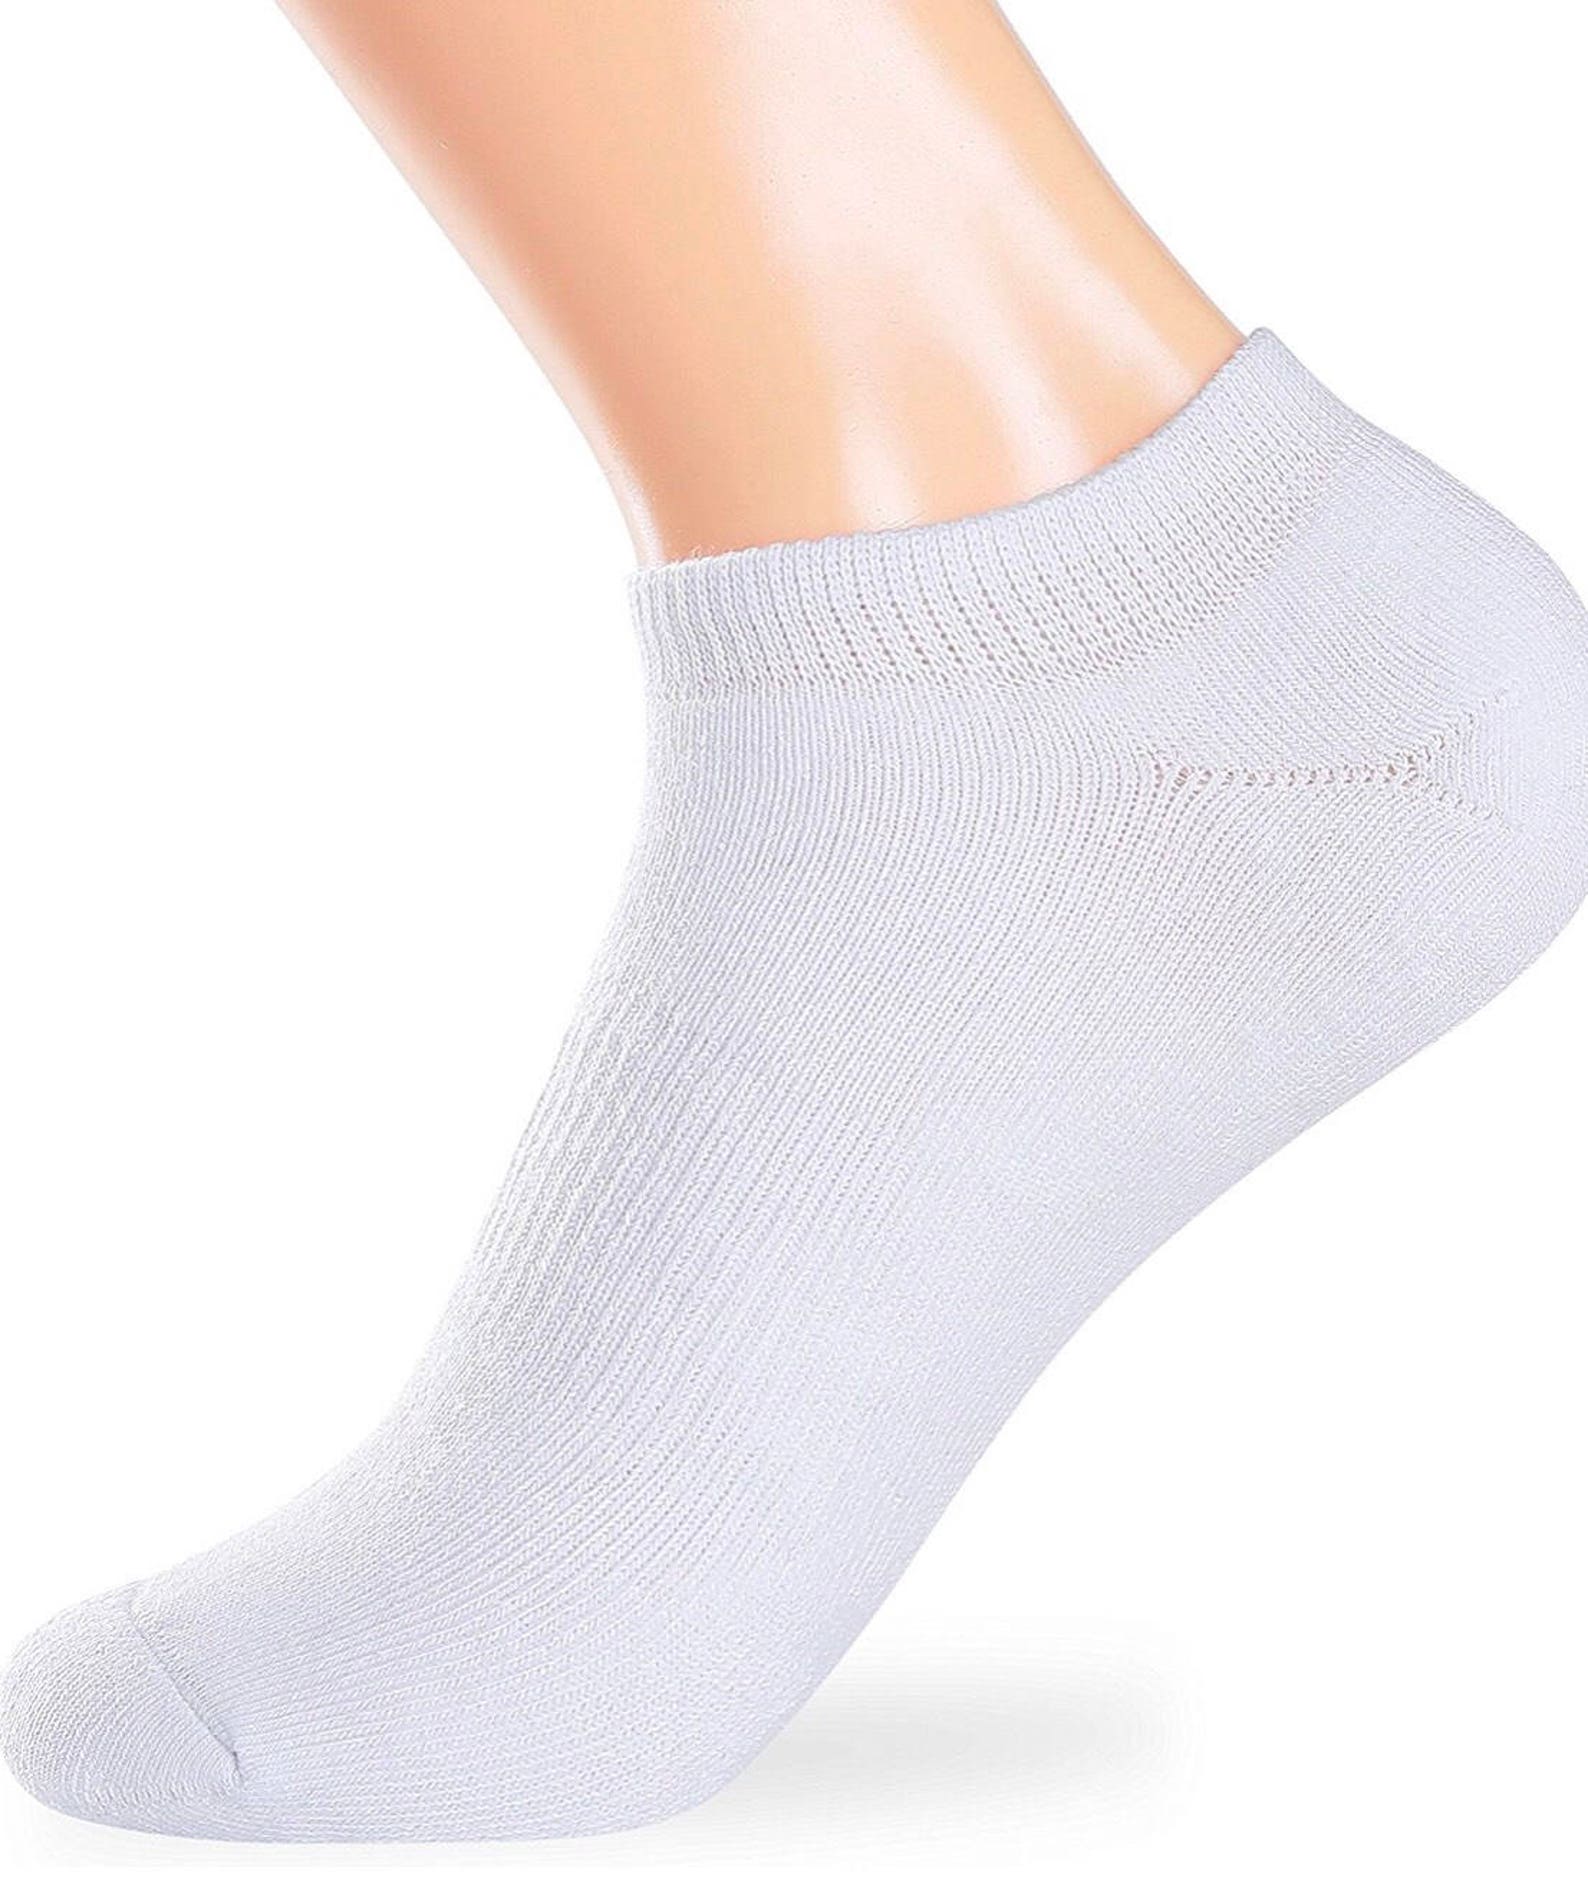 IVF Socks Fertility Socks Lucky Socks Ivf Egg Retrieval - Etsy